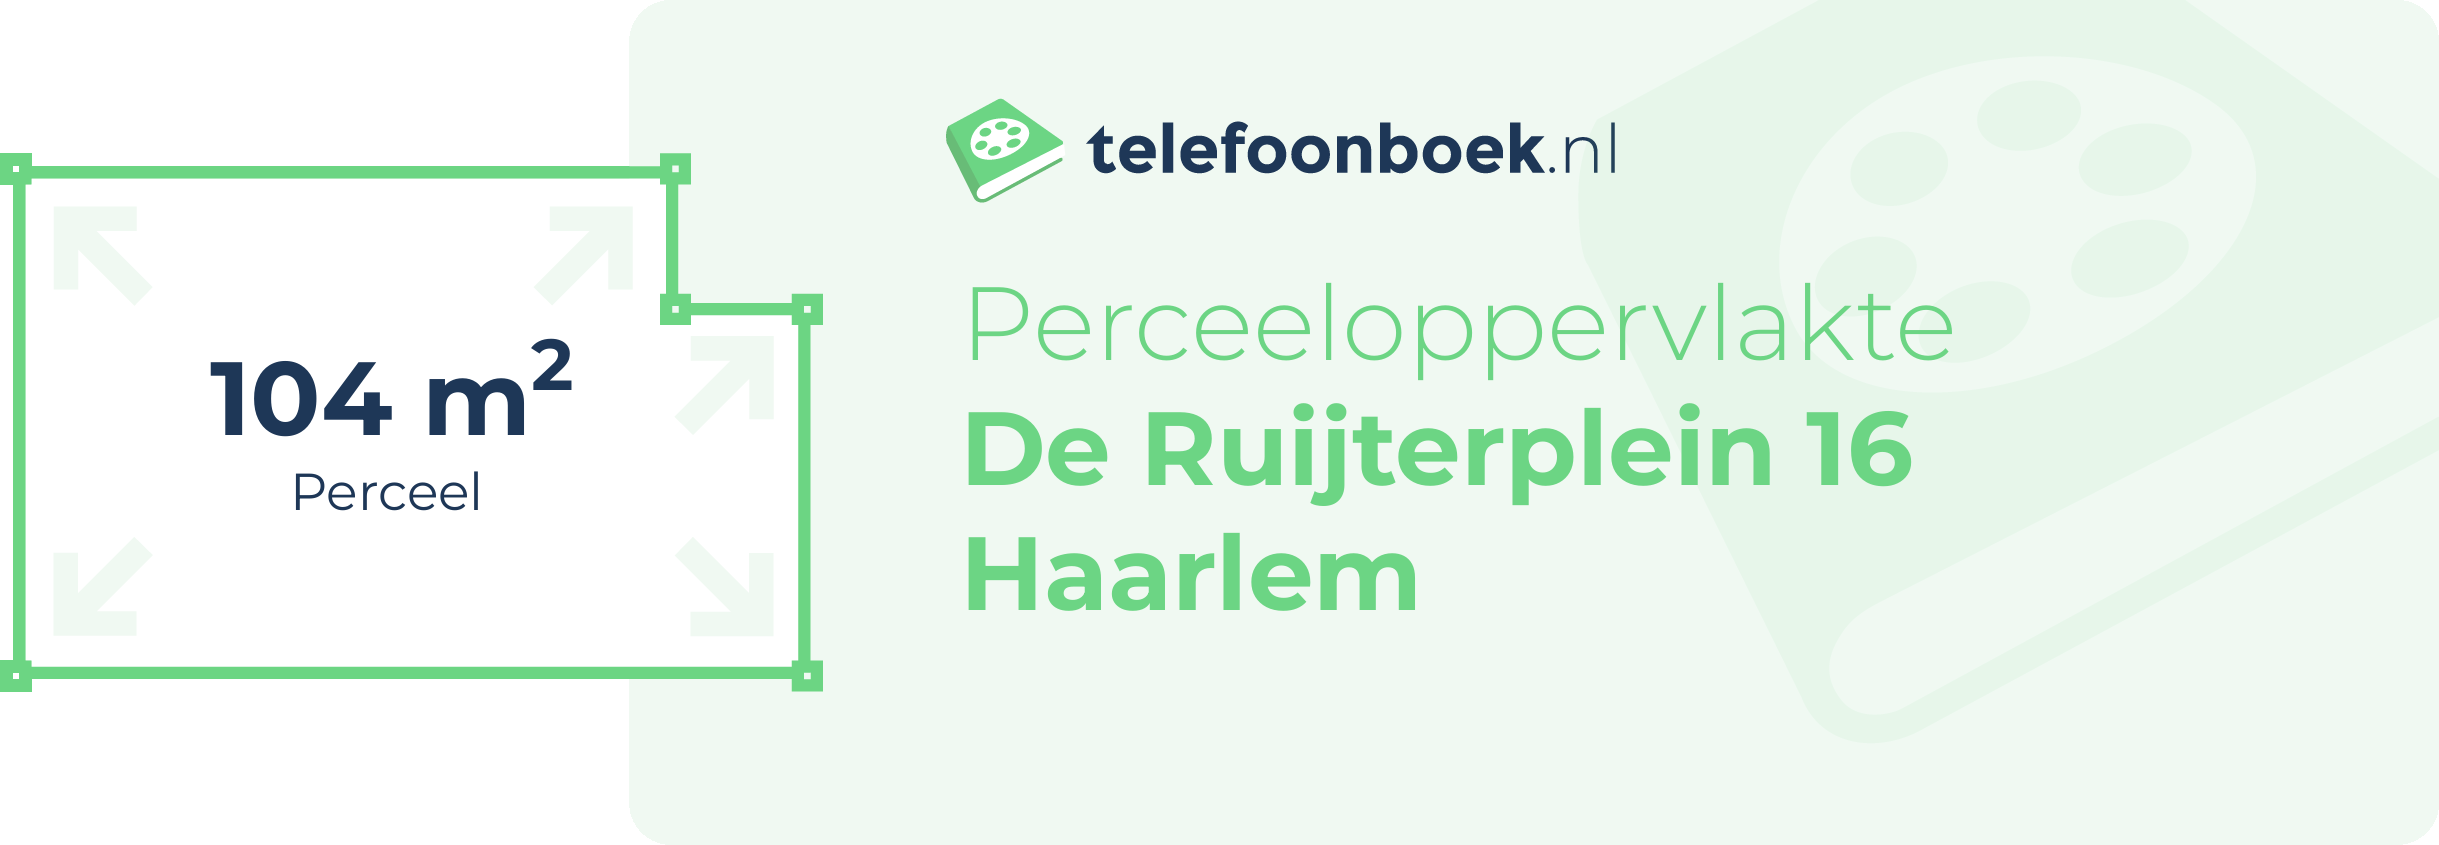 Perceeloppervlakte De Ruijterplein 16 Haarlem